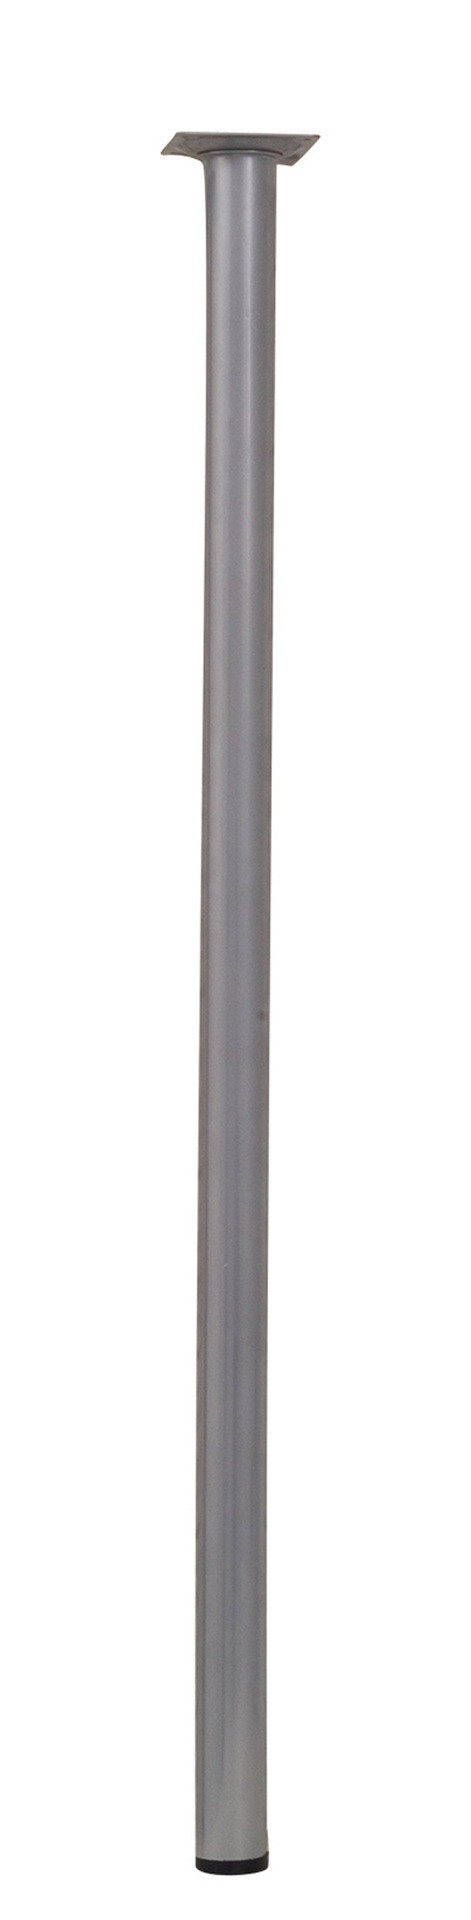 Pied de table basse cylindrique fixe acier mat gris, 70 cm